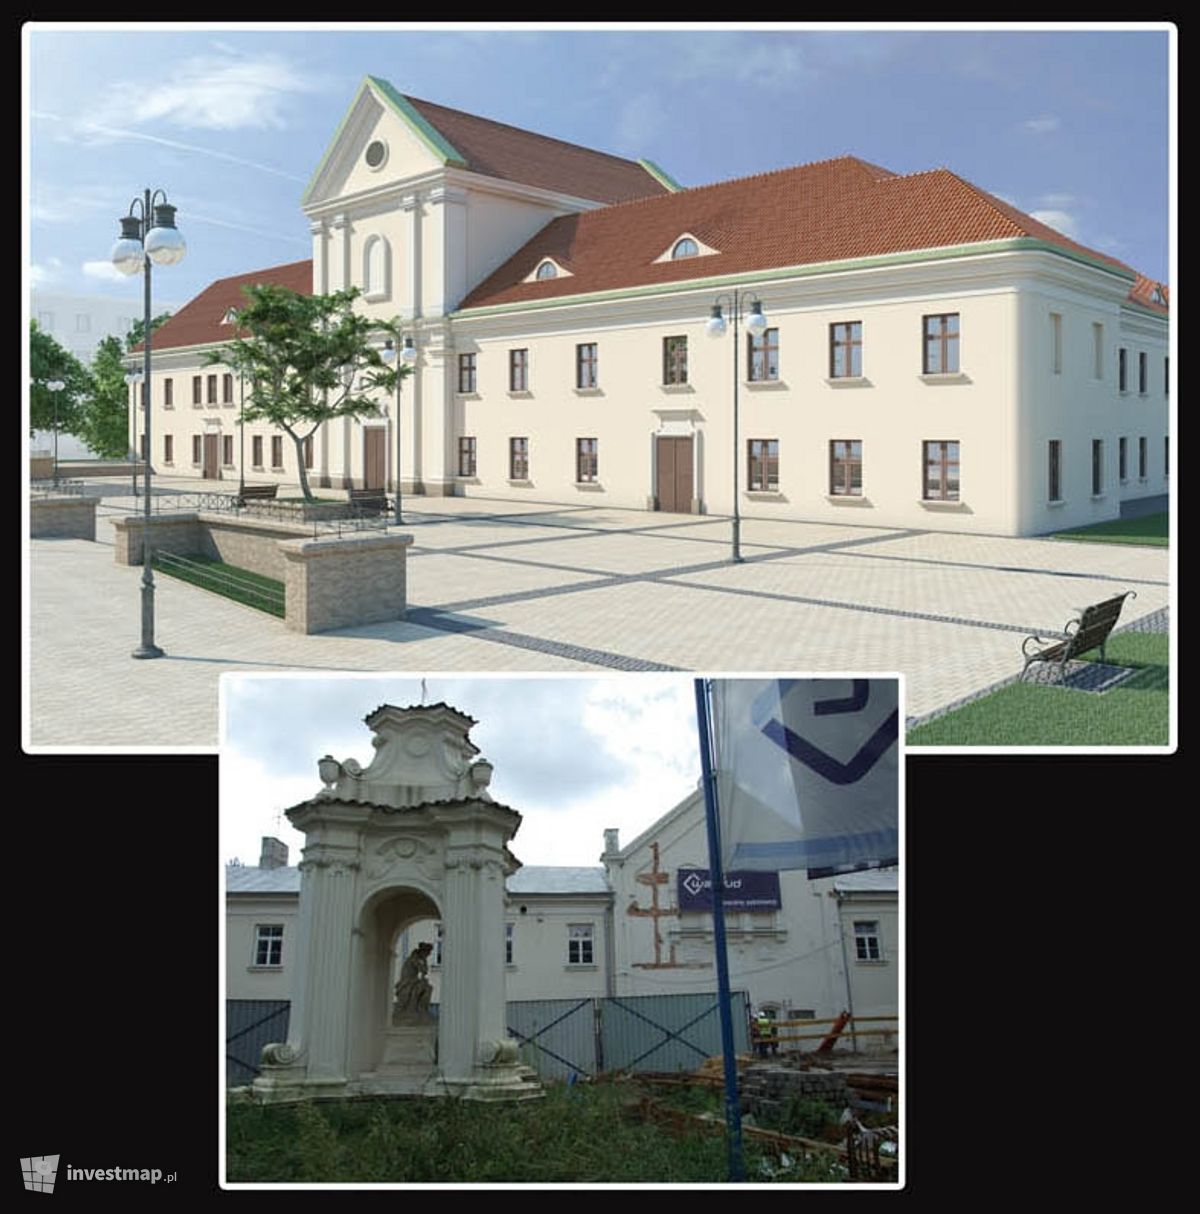 Wizualizacja [Lublin] Renowacja klasztoru powizytkowskiego na Centrum Działań Artystycznych dodał bista 